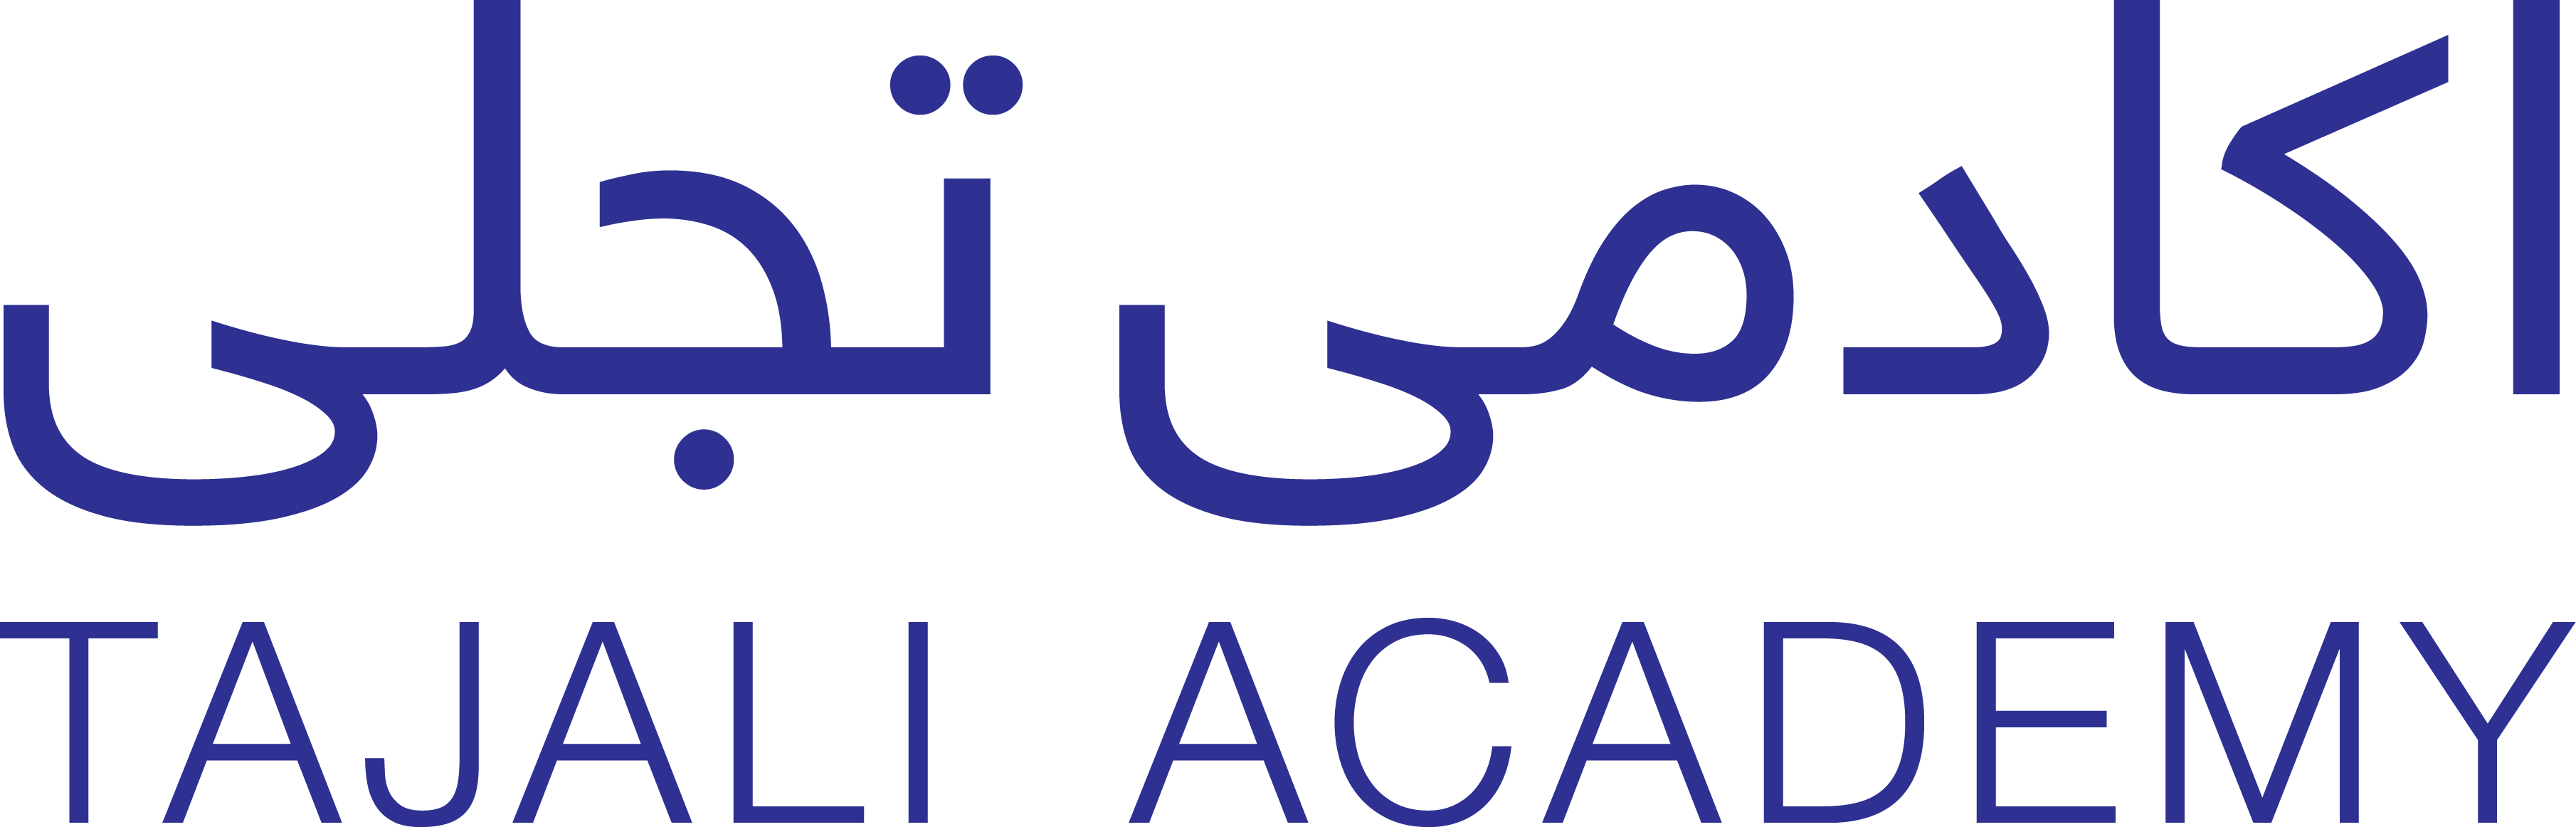 Tajali Academy